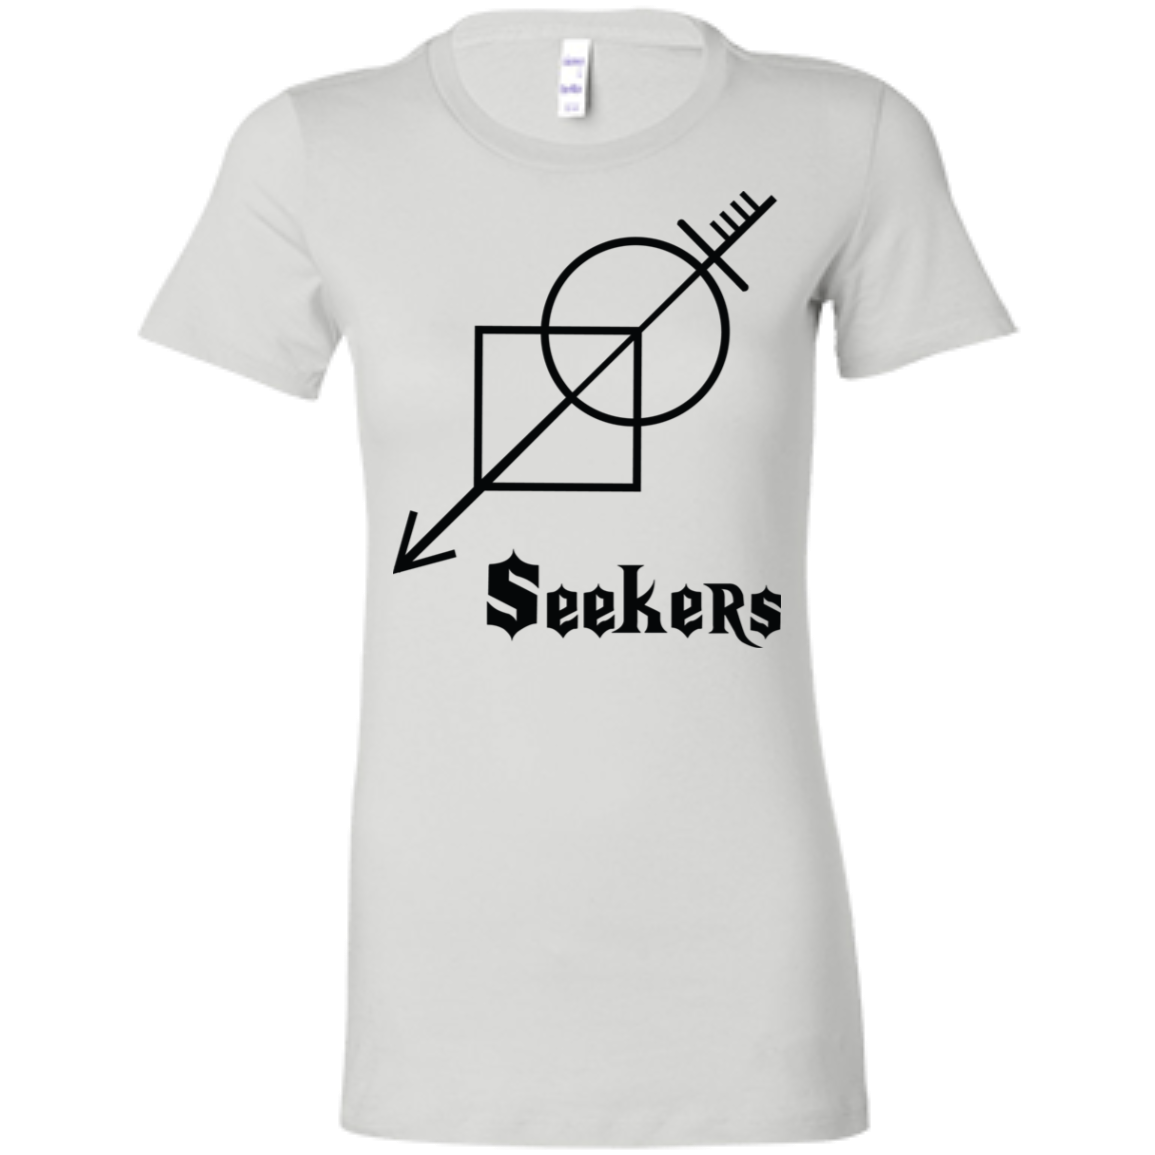 Seekers- Ladies' Favorite T-Shirt-women's